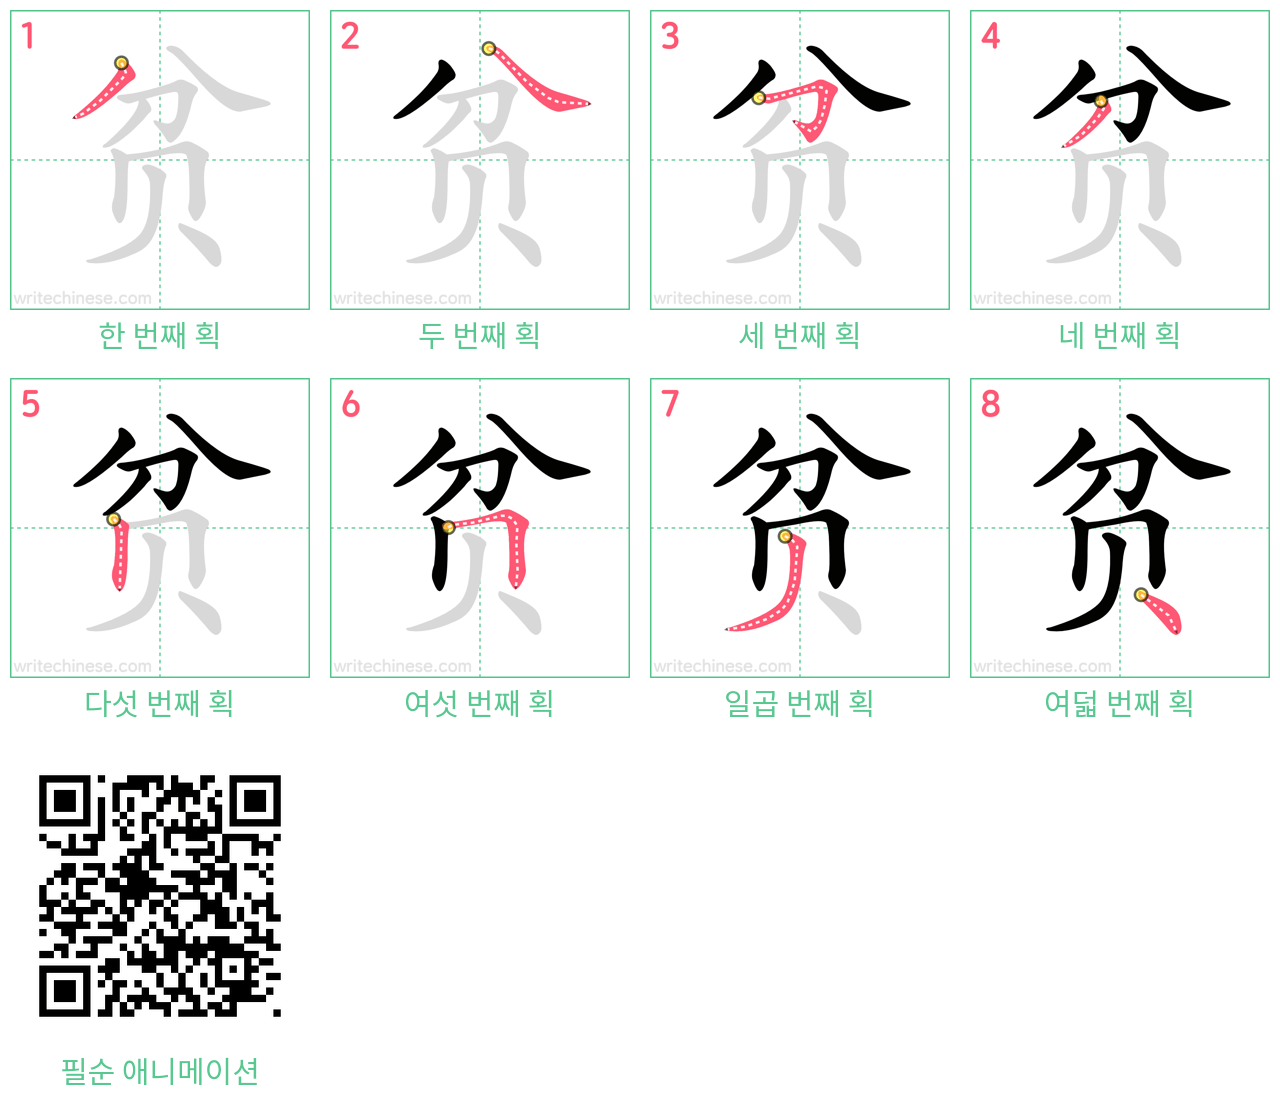 贫 step-by-step stroke order diagrams